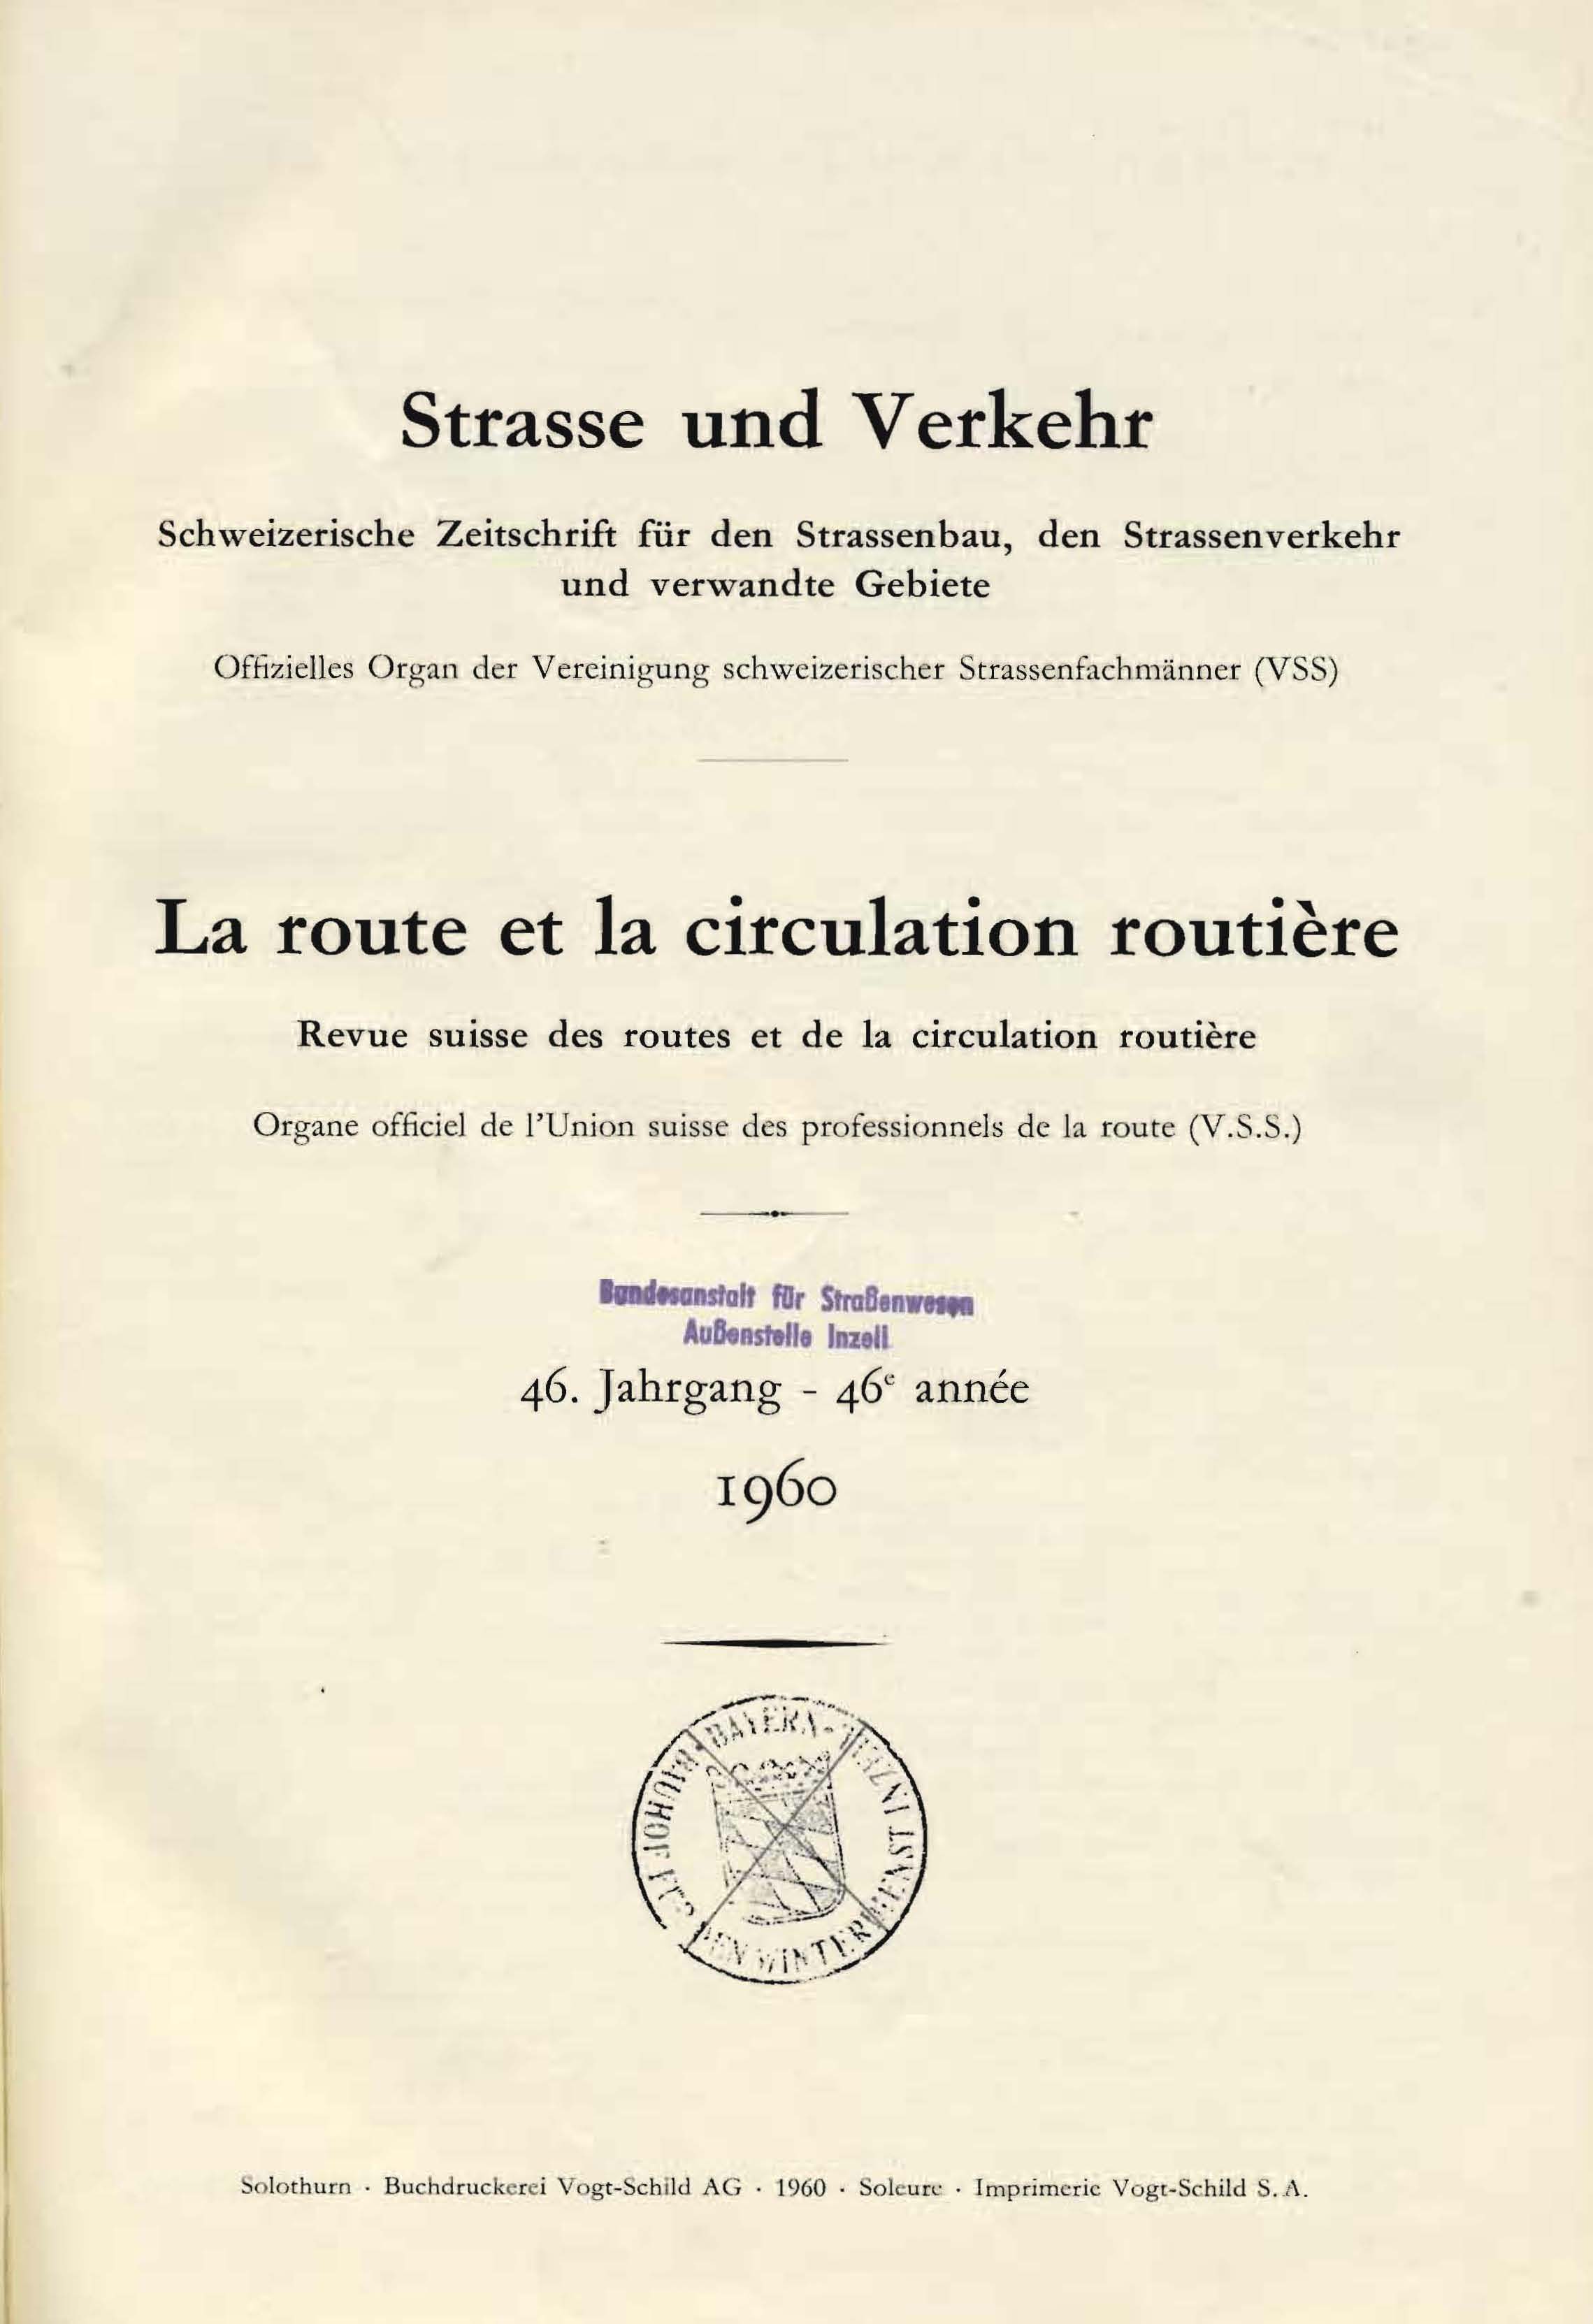 Strasse und Verkehr, 46. Jahrgang 1960